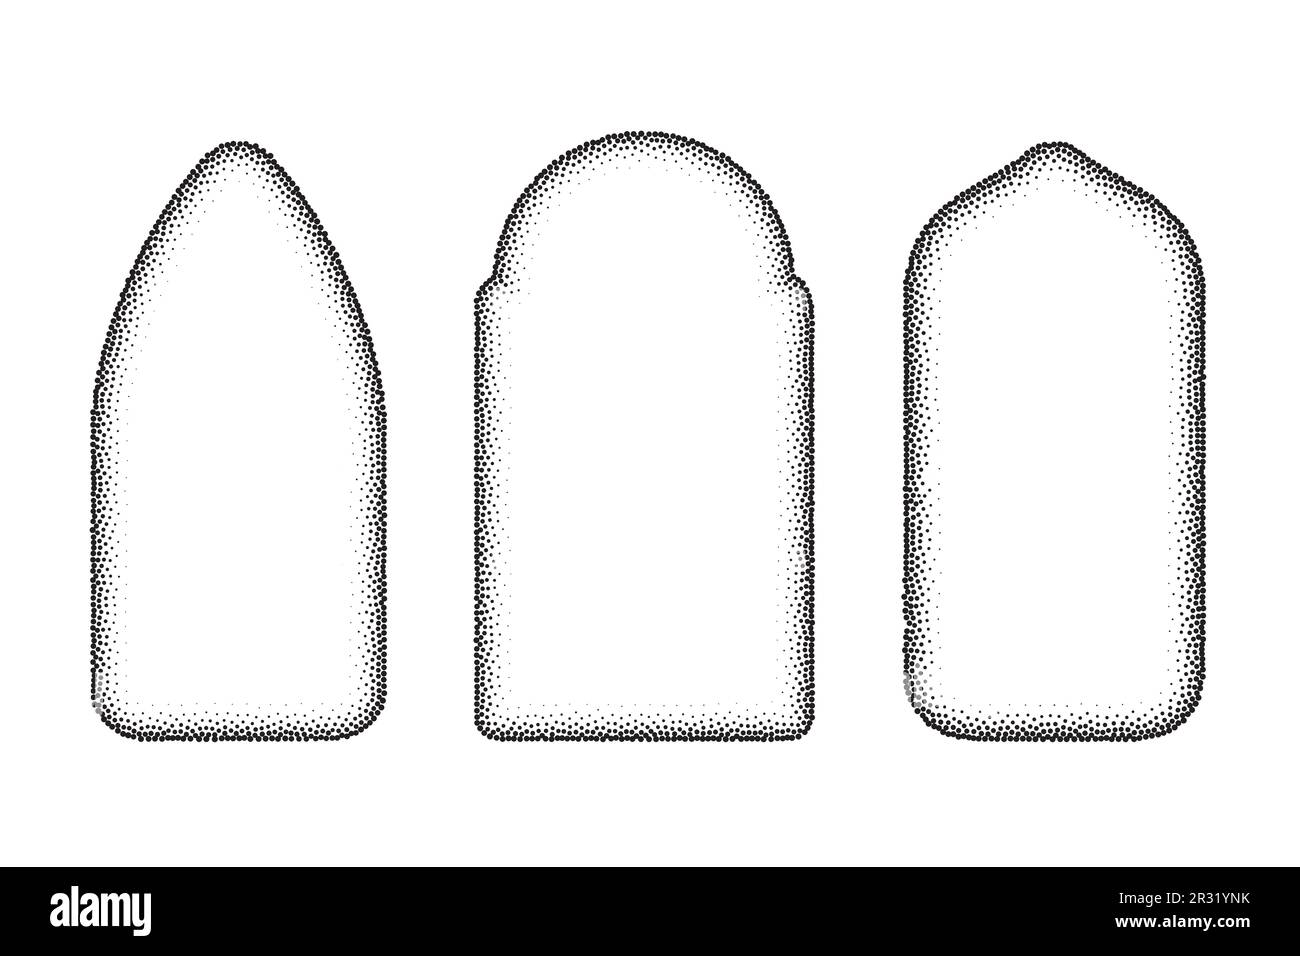 Finestre gotiche della chiesa. Archi vettoriali forme puntinate. Silhouette di semplici porte medievali su sfondo bianco. Illustrazione Vettoriale